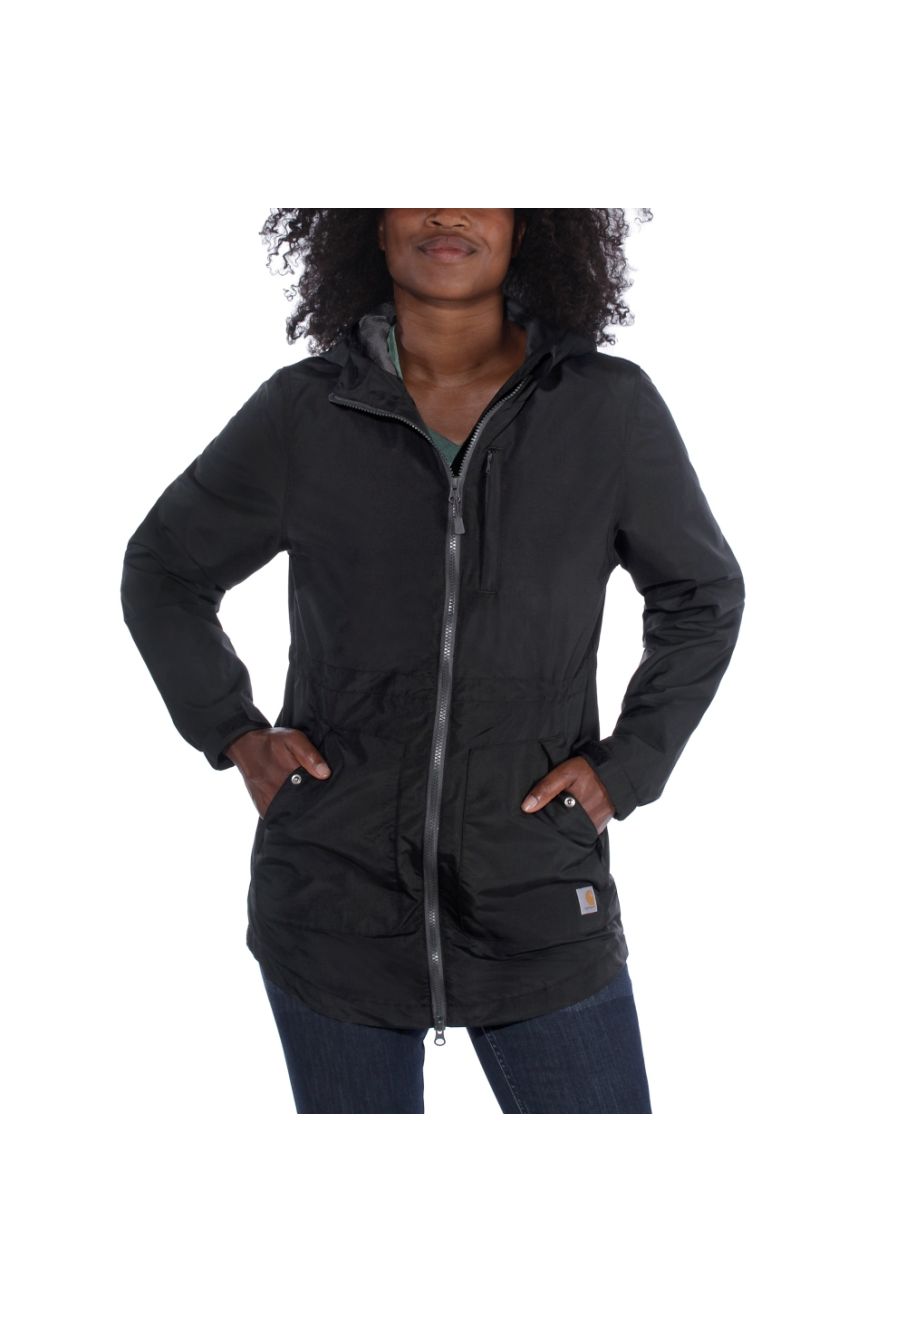 Carhartt 104221 Women's Rockford Jacket - Black